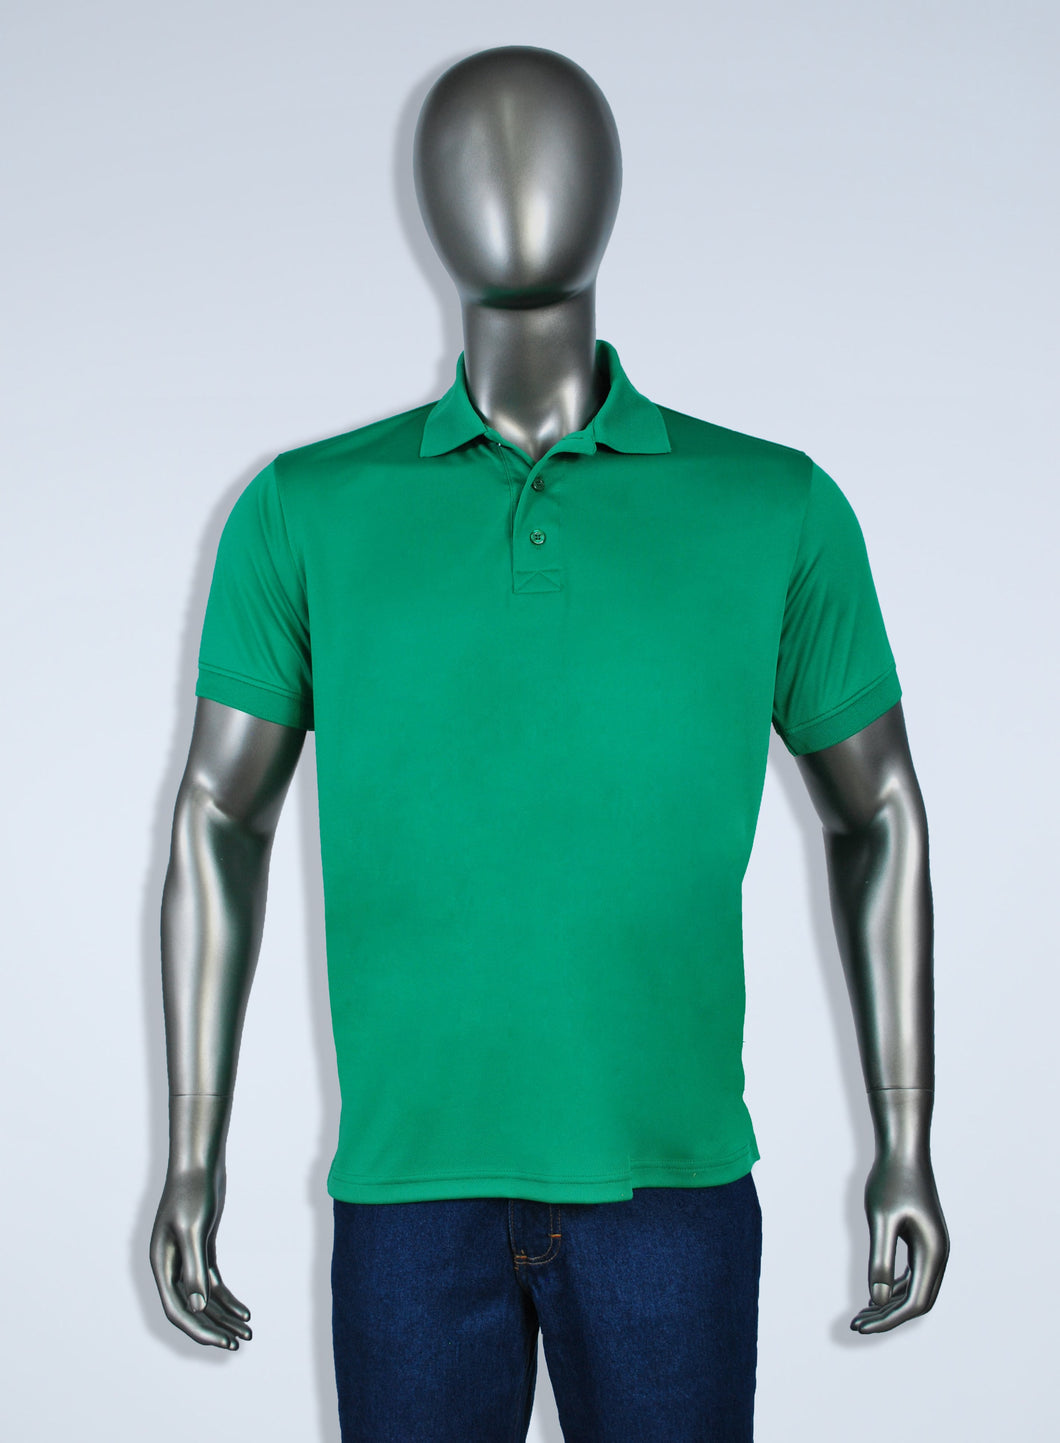 Men's green polyester polo